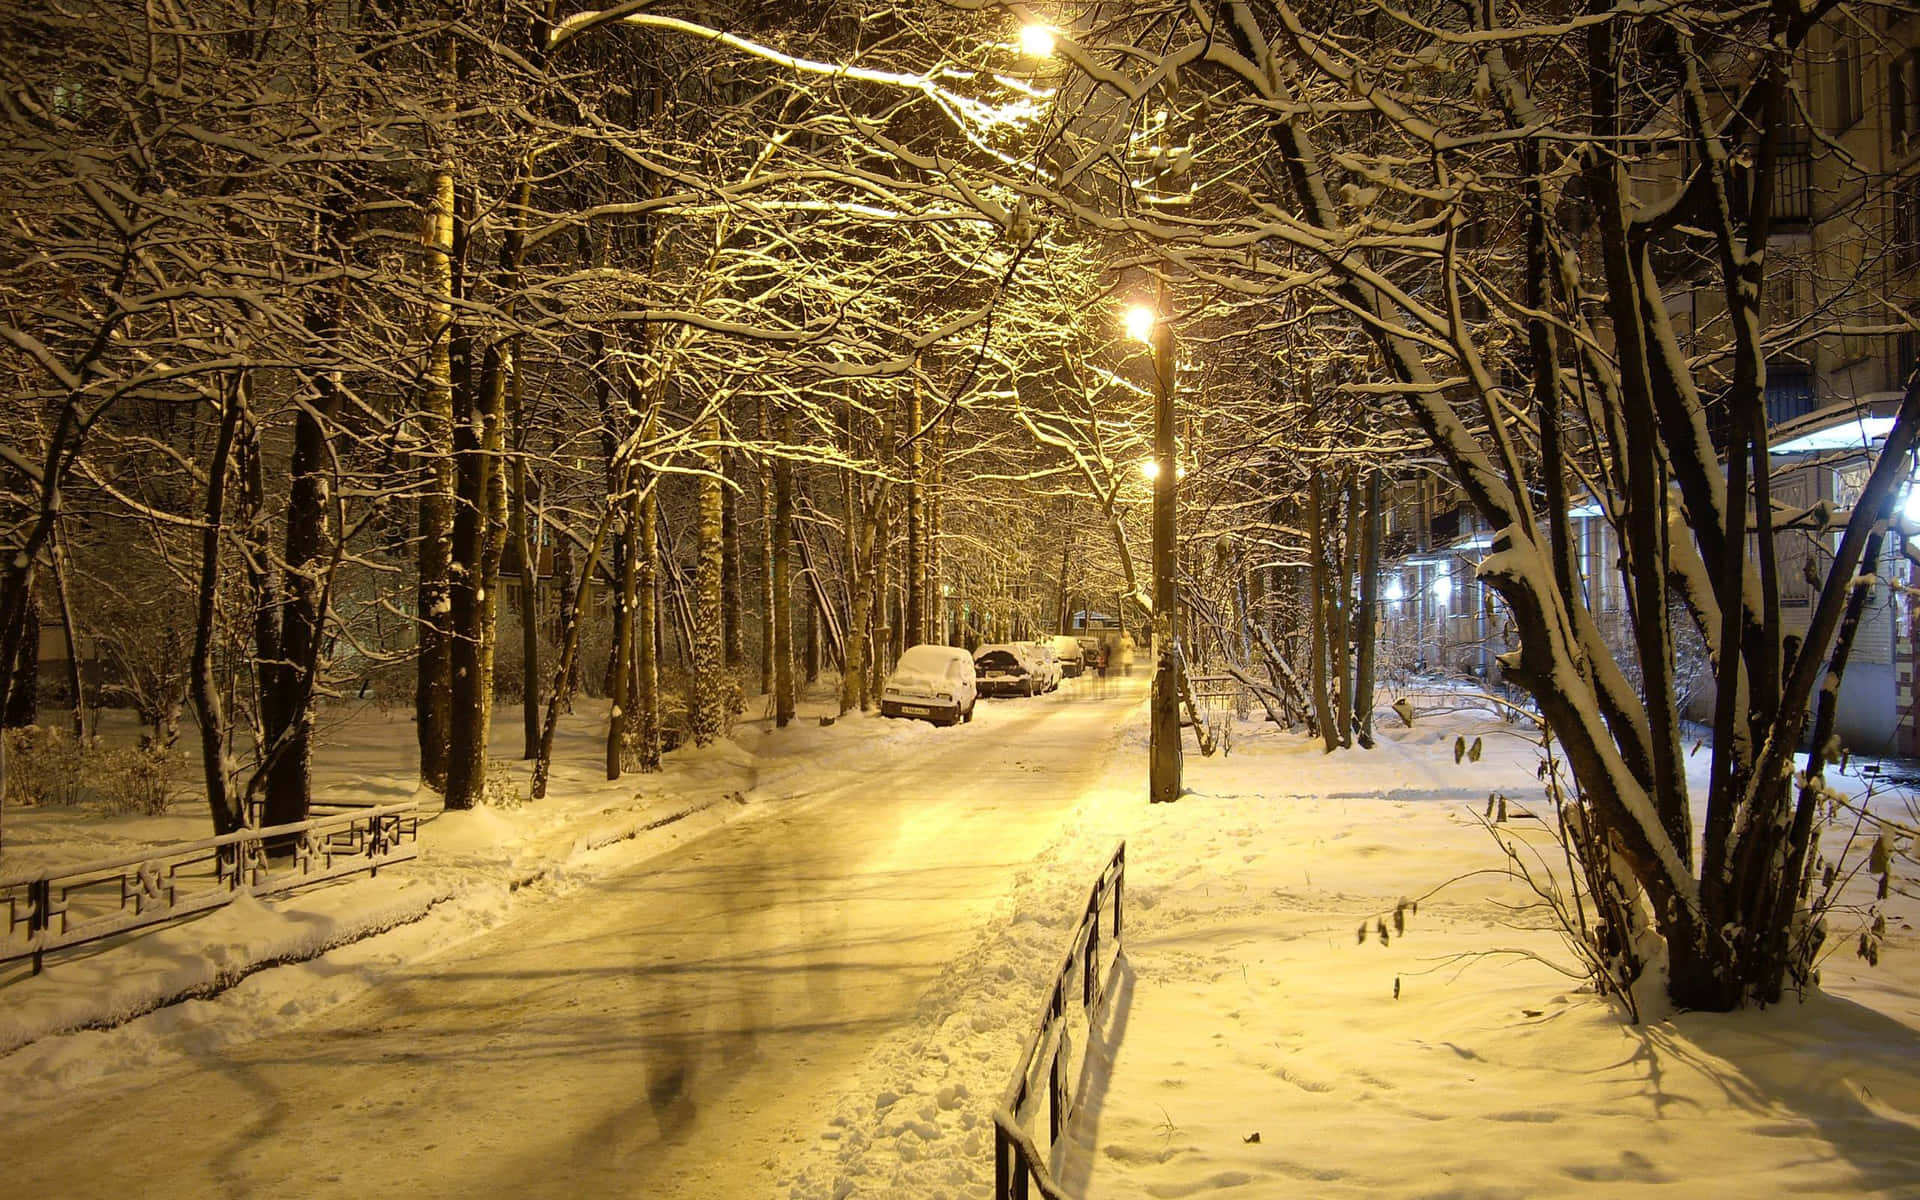 Fondode Pantalla De Un Camino Cubierto De Nieve En La Noche De Invierno